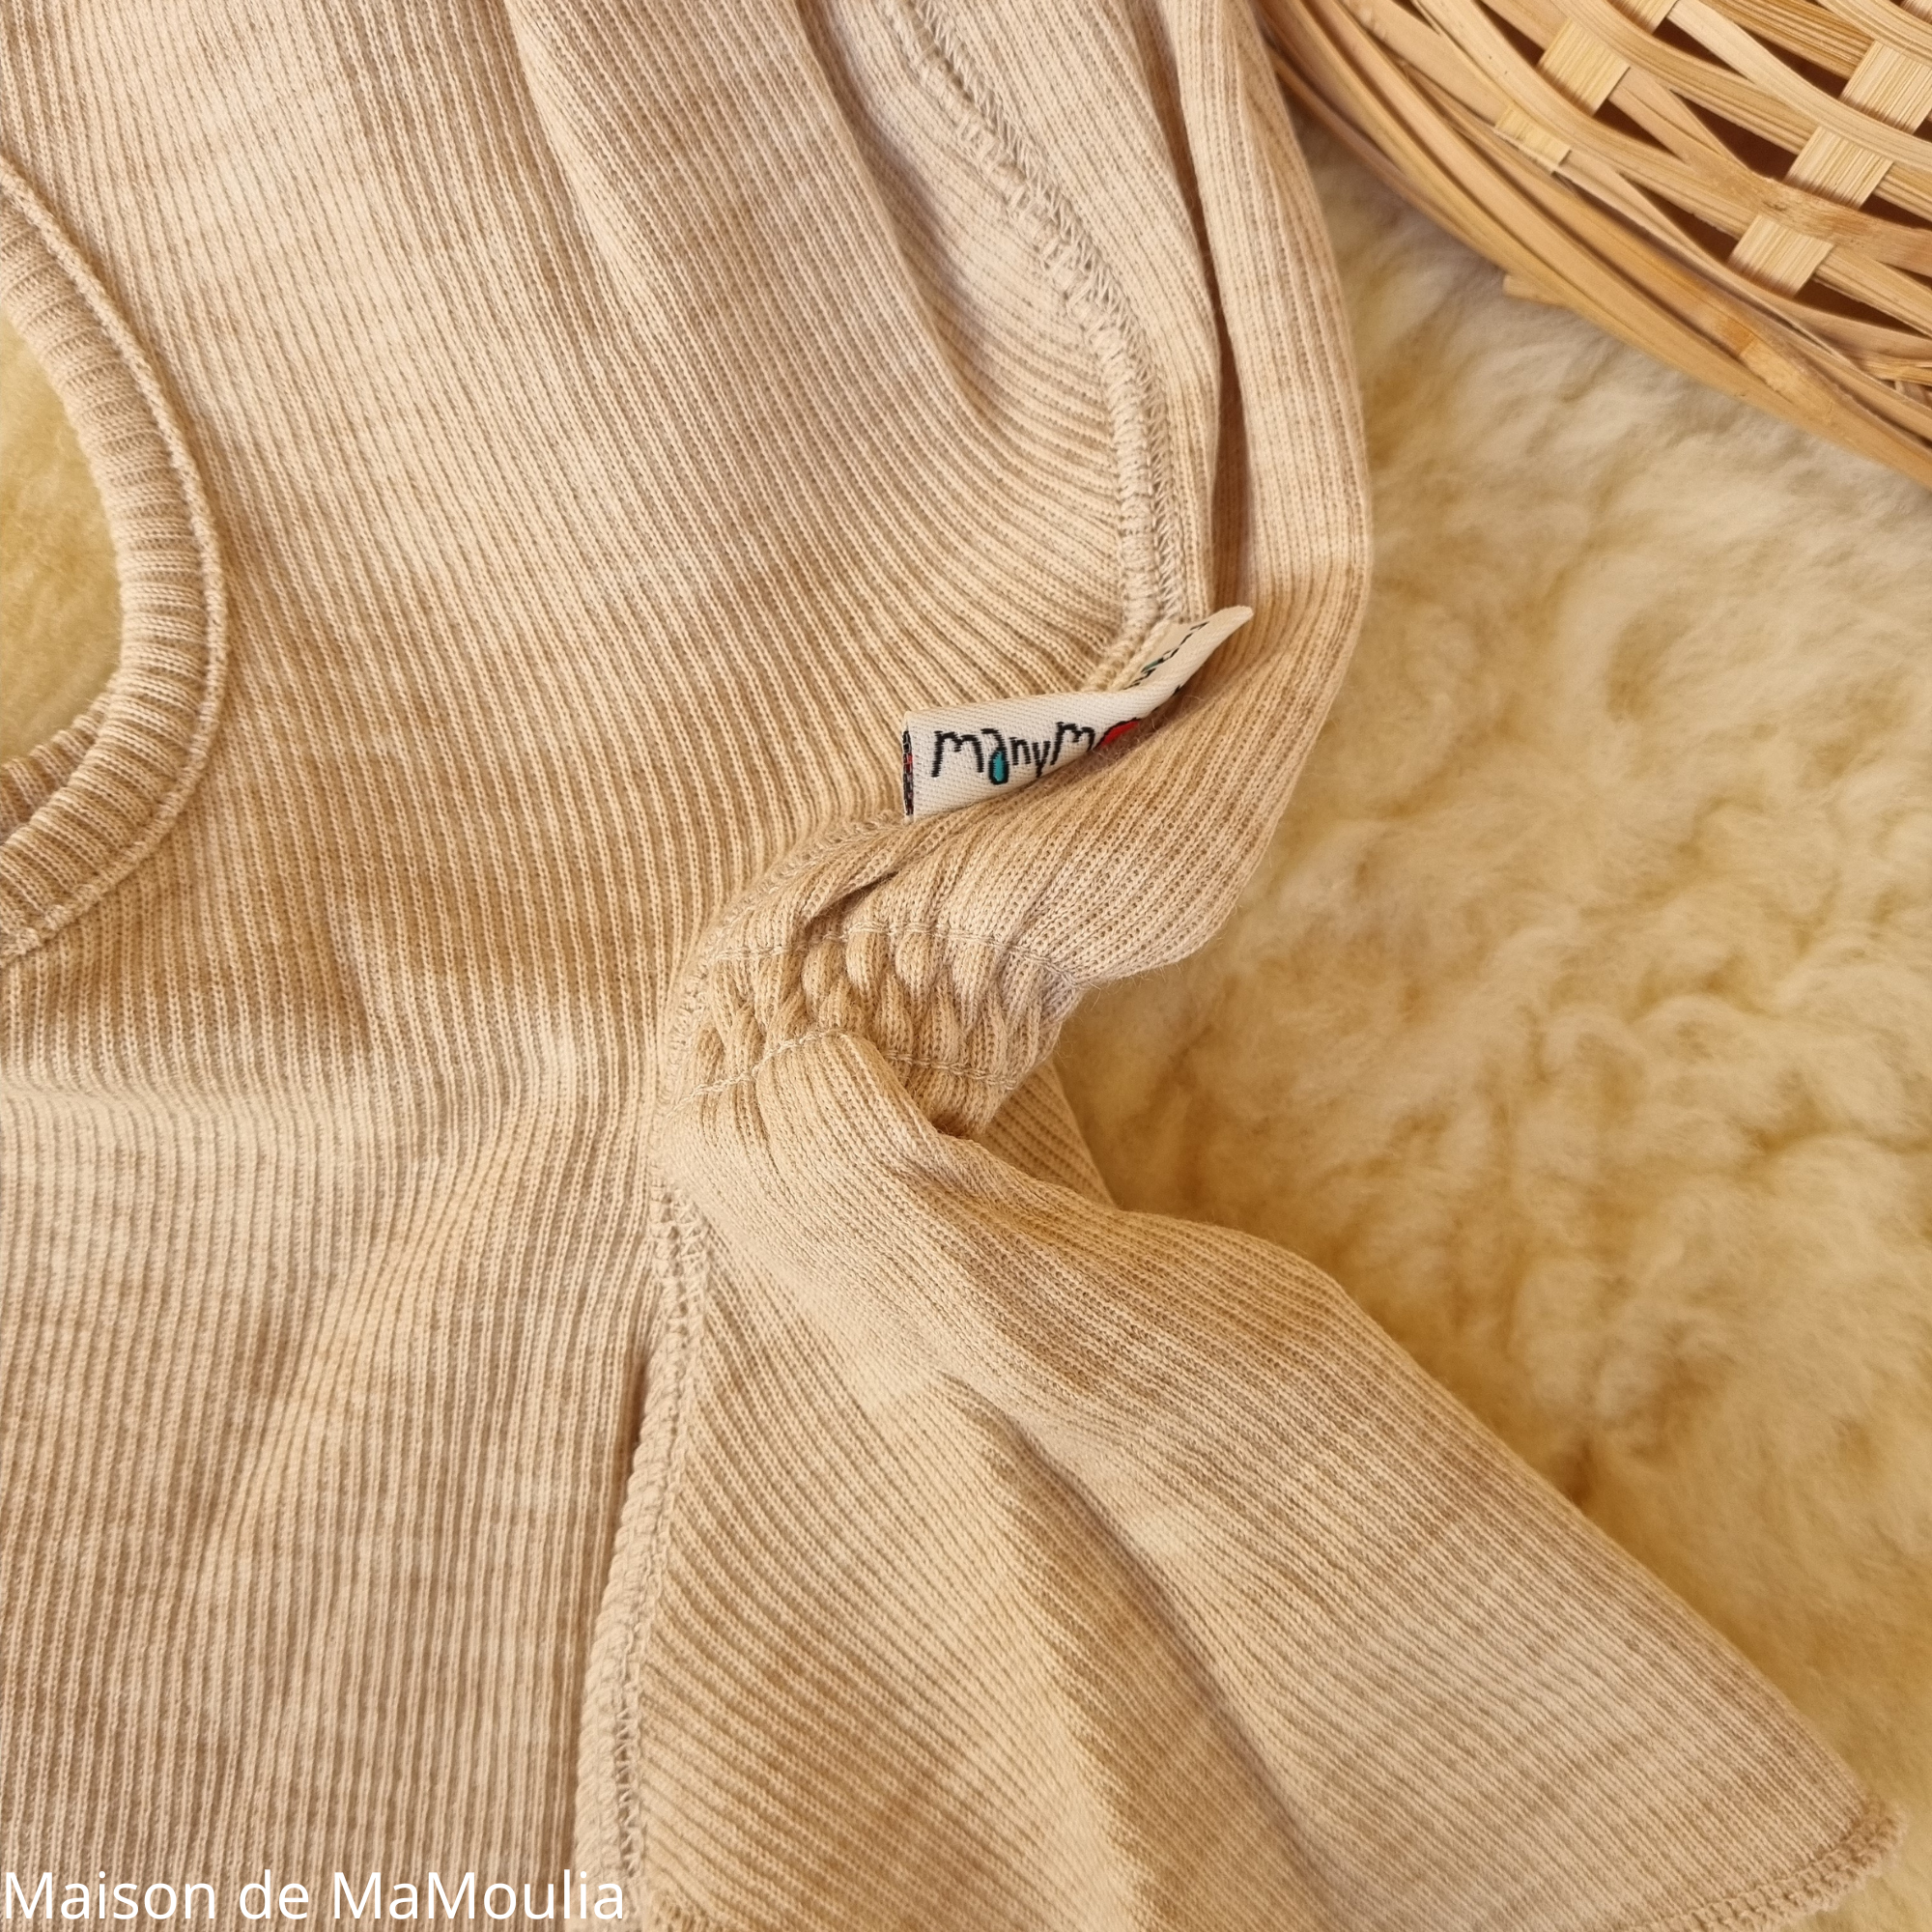 Cagoule TEDDY 100% laine mérinos de Manymonths Plusieurs coloris